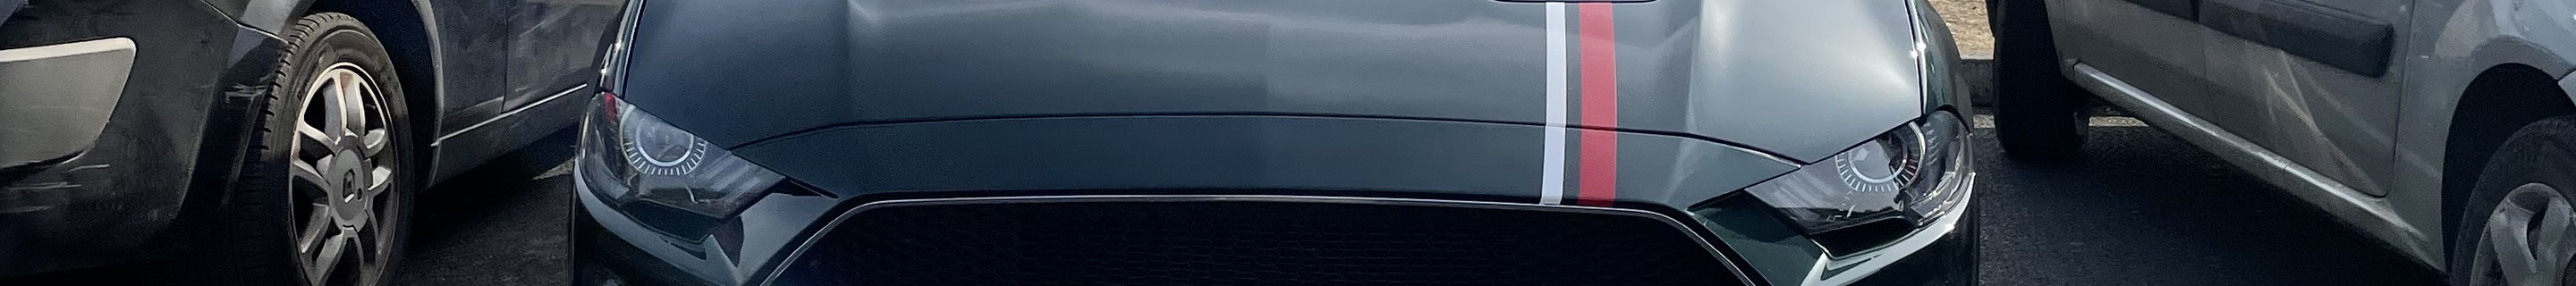 Ford Mustang Bullitt 2019